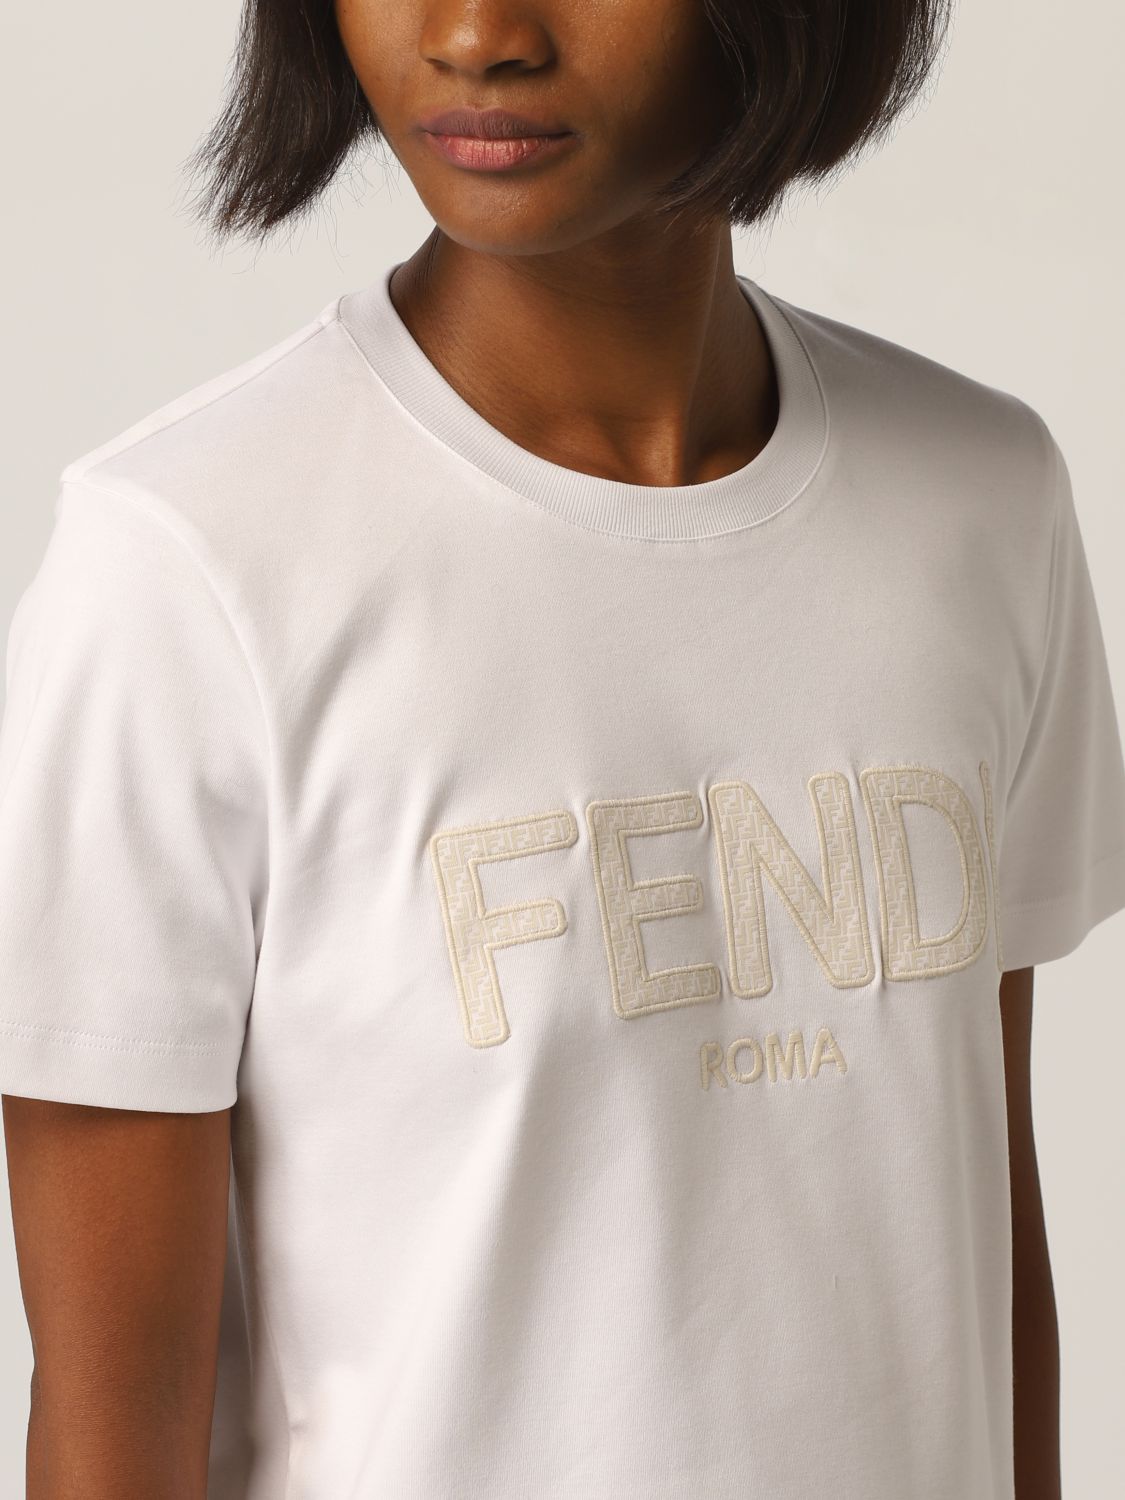 펜디(FENDI): 티셔츠 여성 - 화이트 | 티셔츠 펜디 FS7254 AHLC GIGLIO.COM